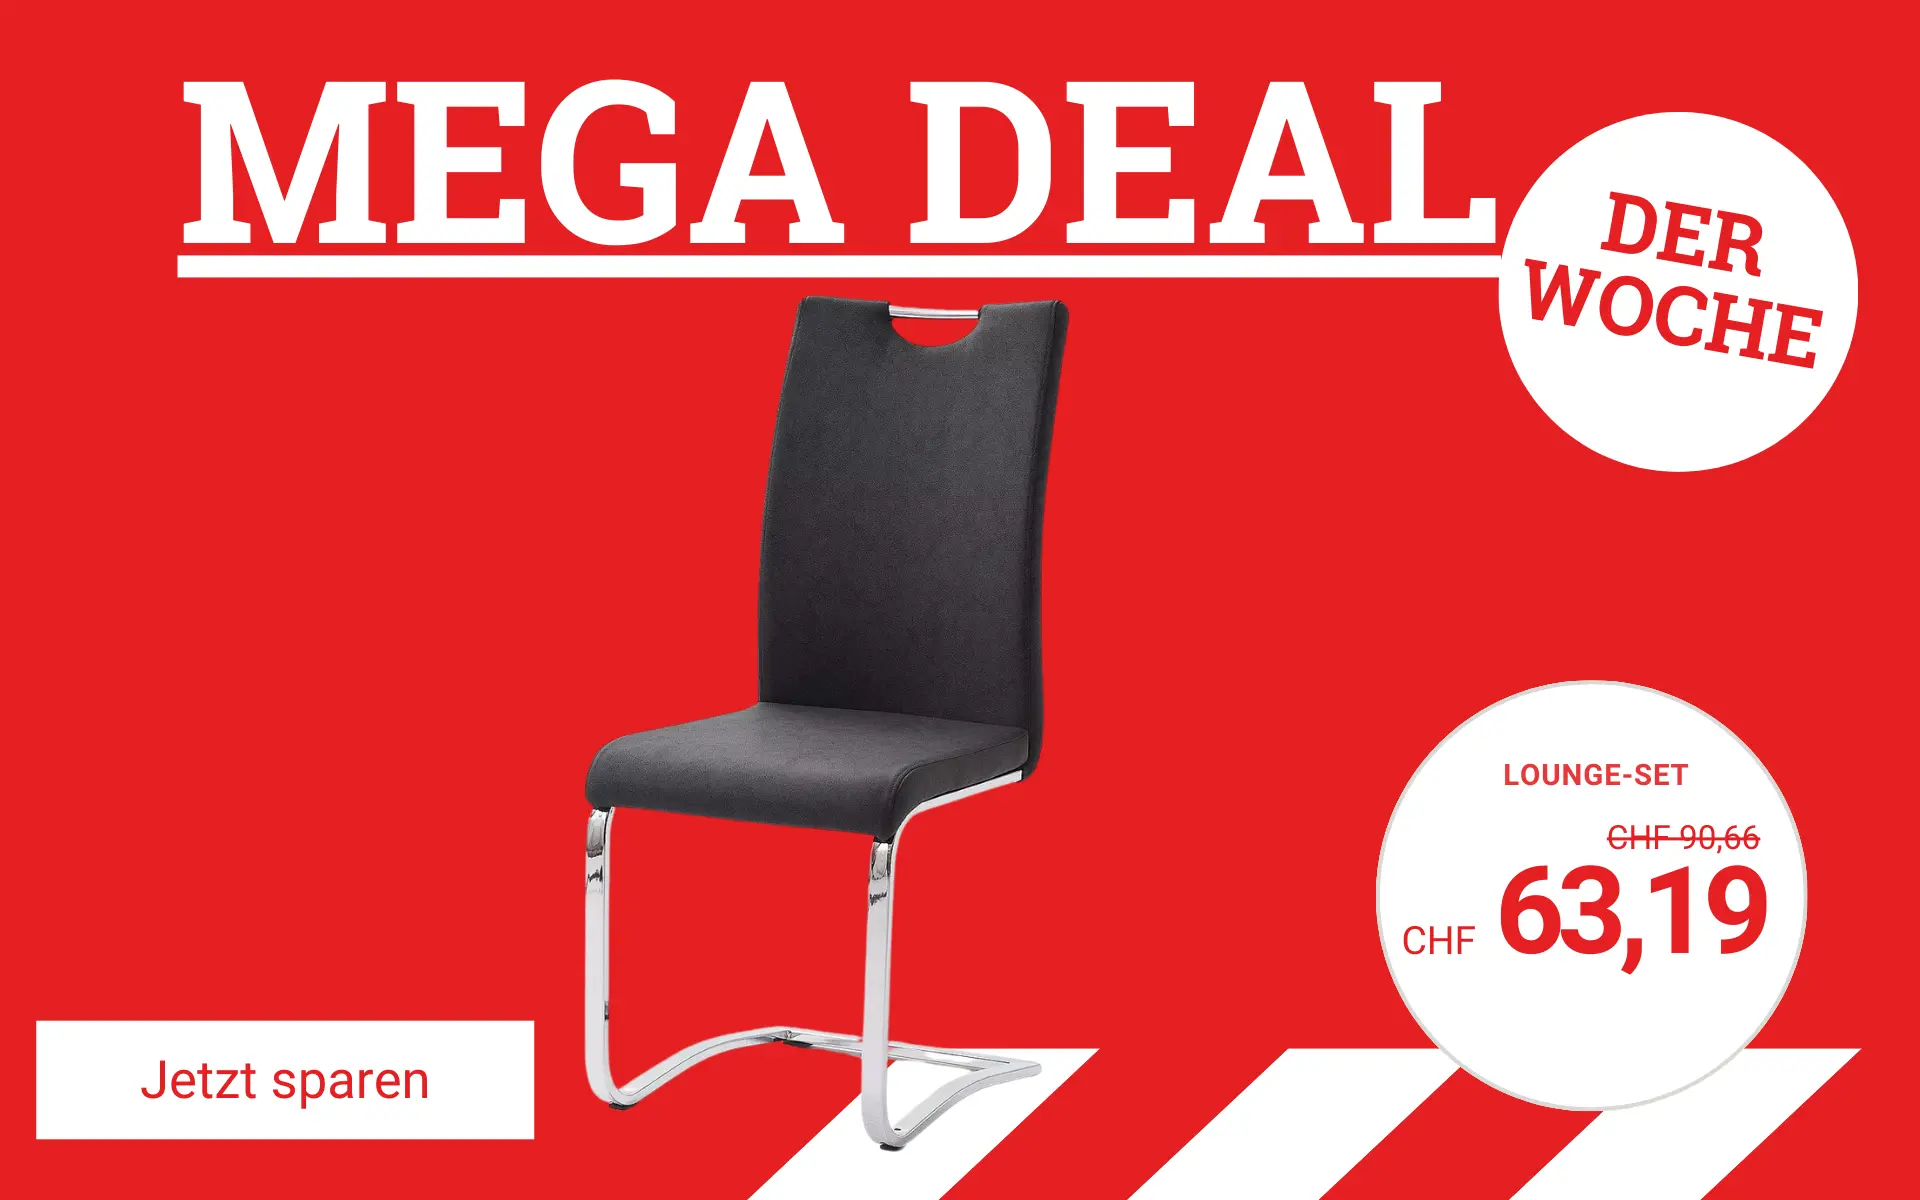 MEGA Deal der Woche - Jetzt sparen